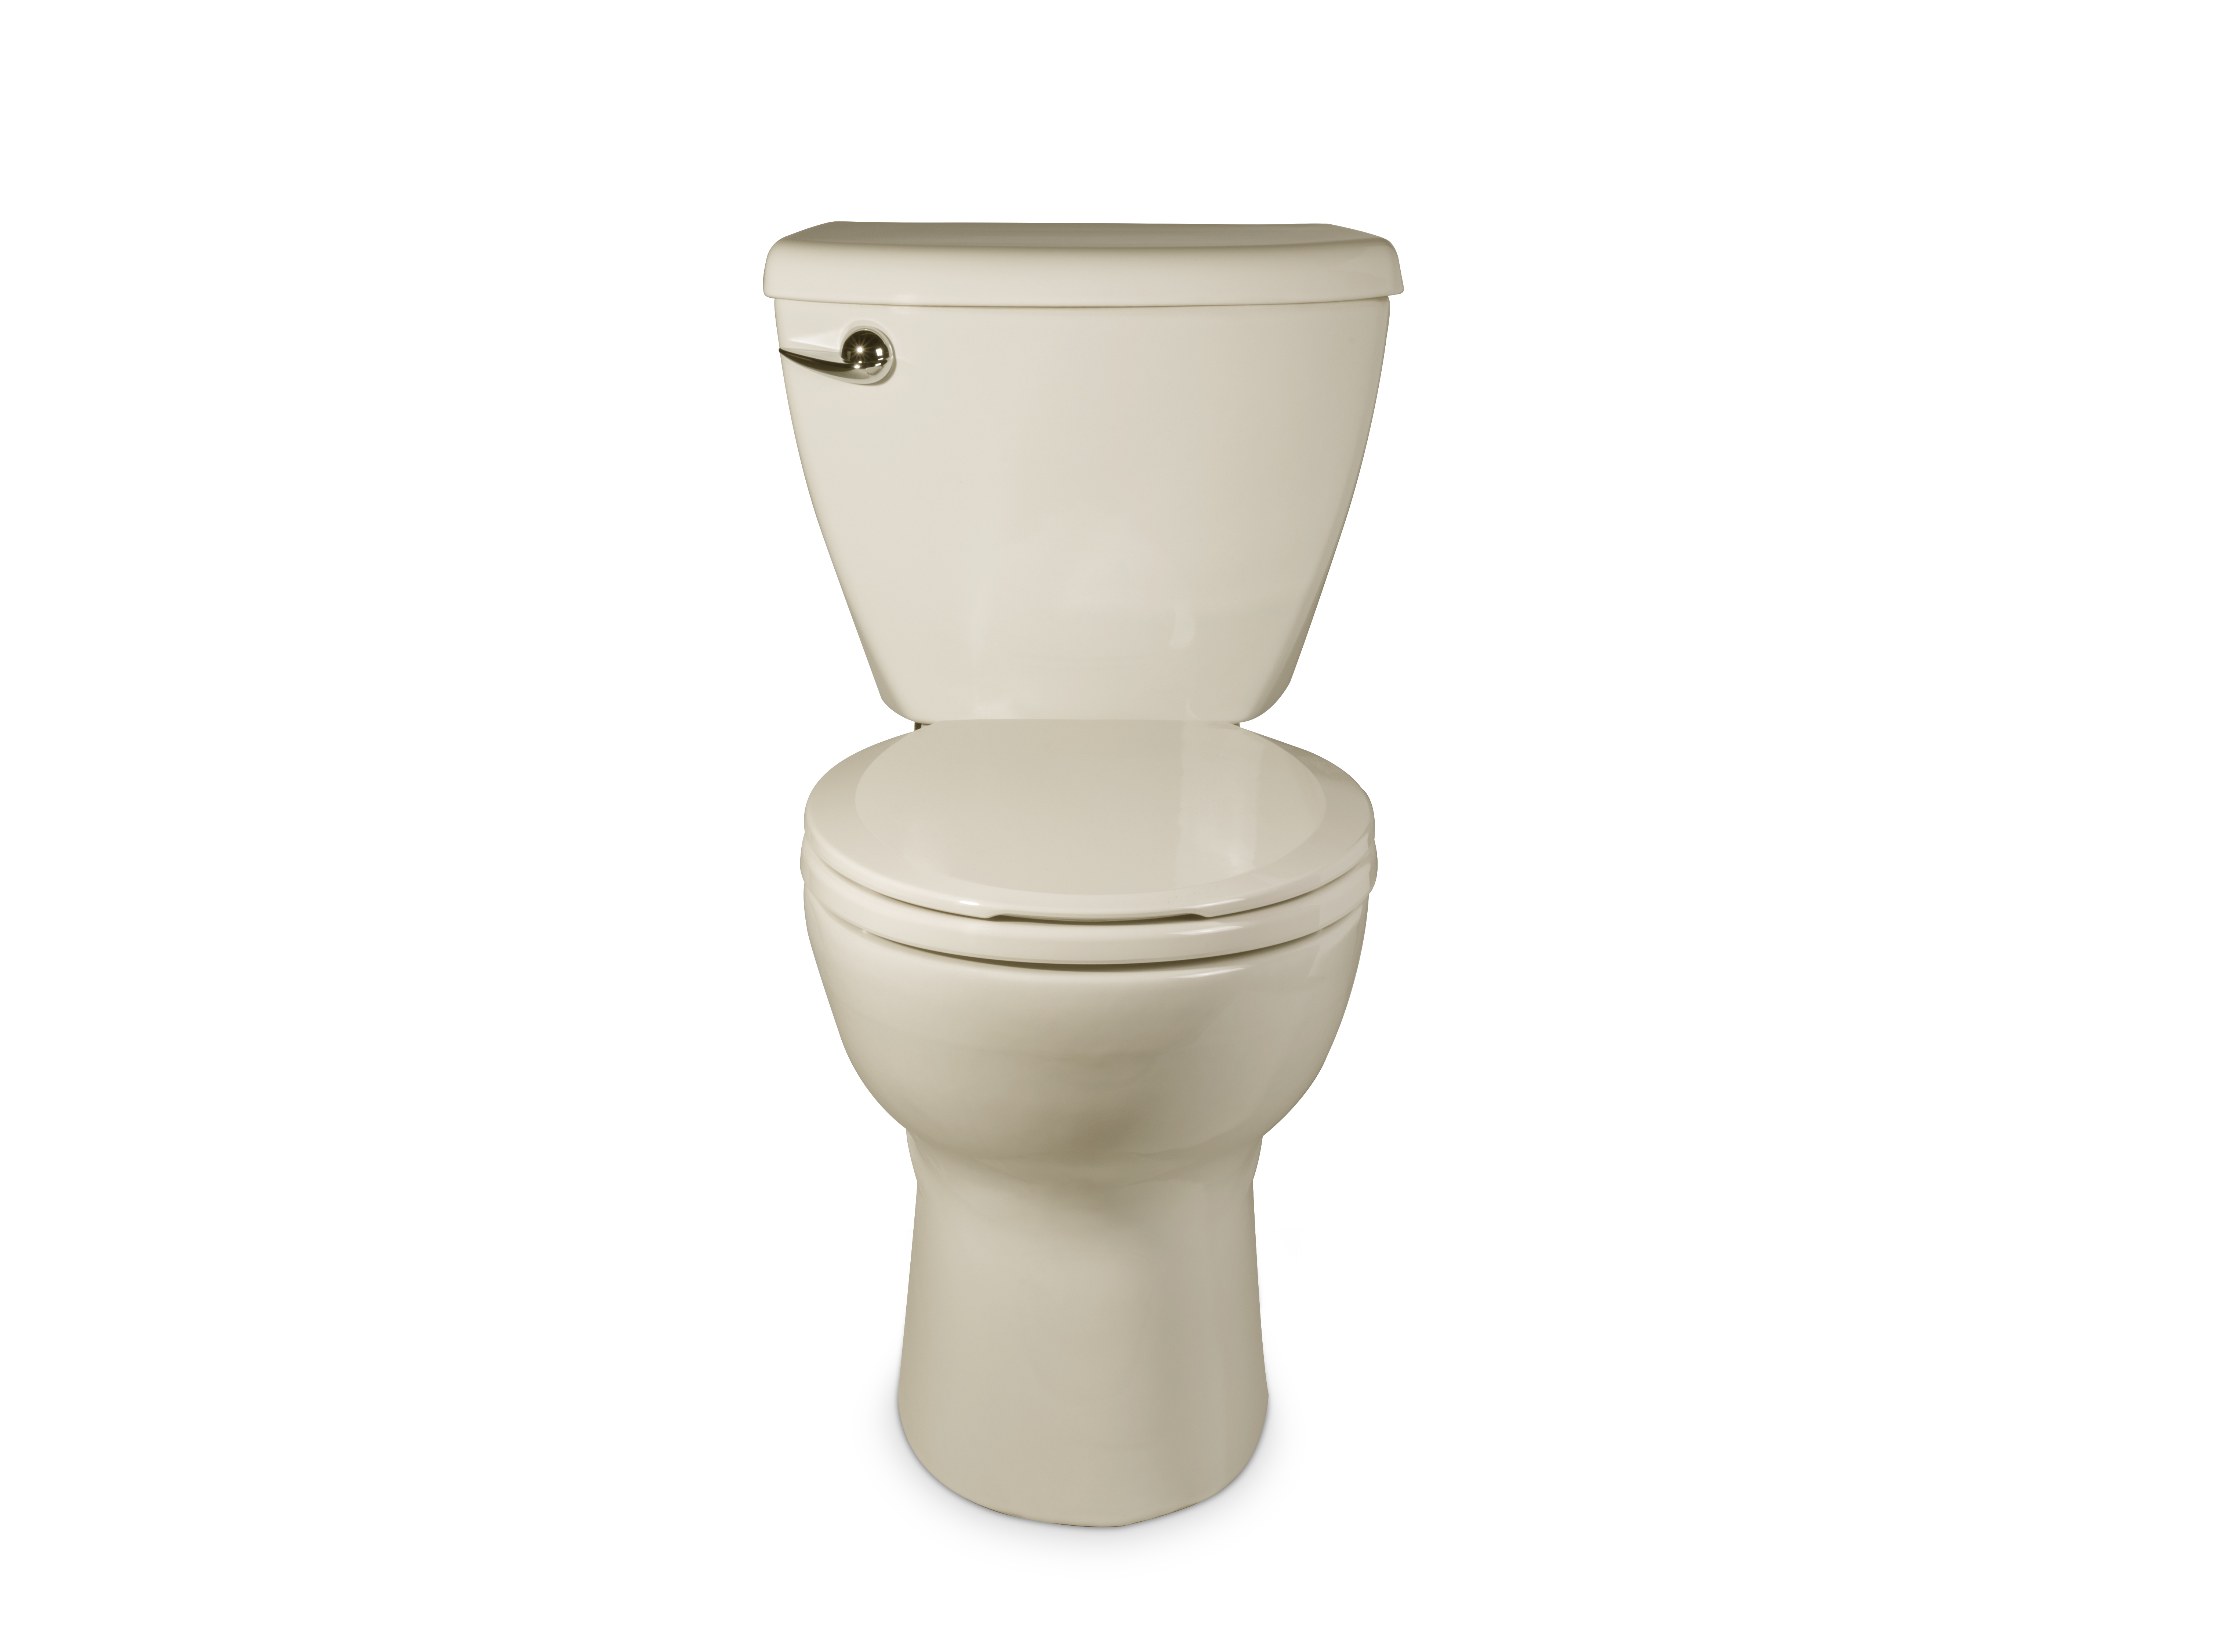 Toilette complète Ravenna 3, 2 pièces, 1,6 gpc/6,0 lpc, à cuvette au devant rond à hauteur régulière et réservoir avec doublure, avec siège